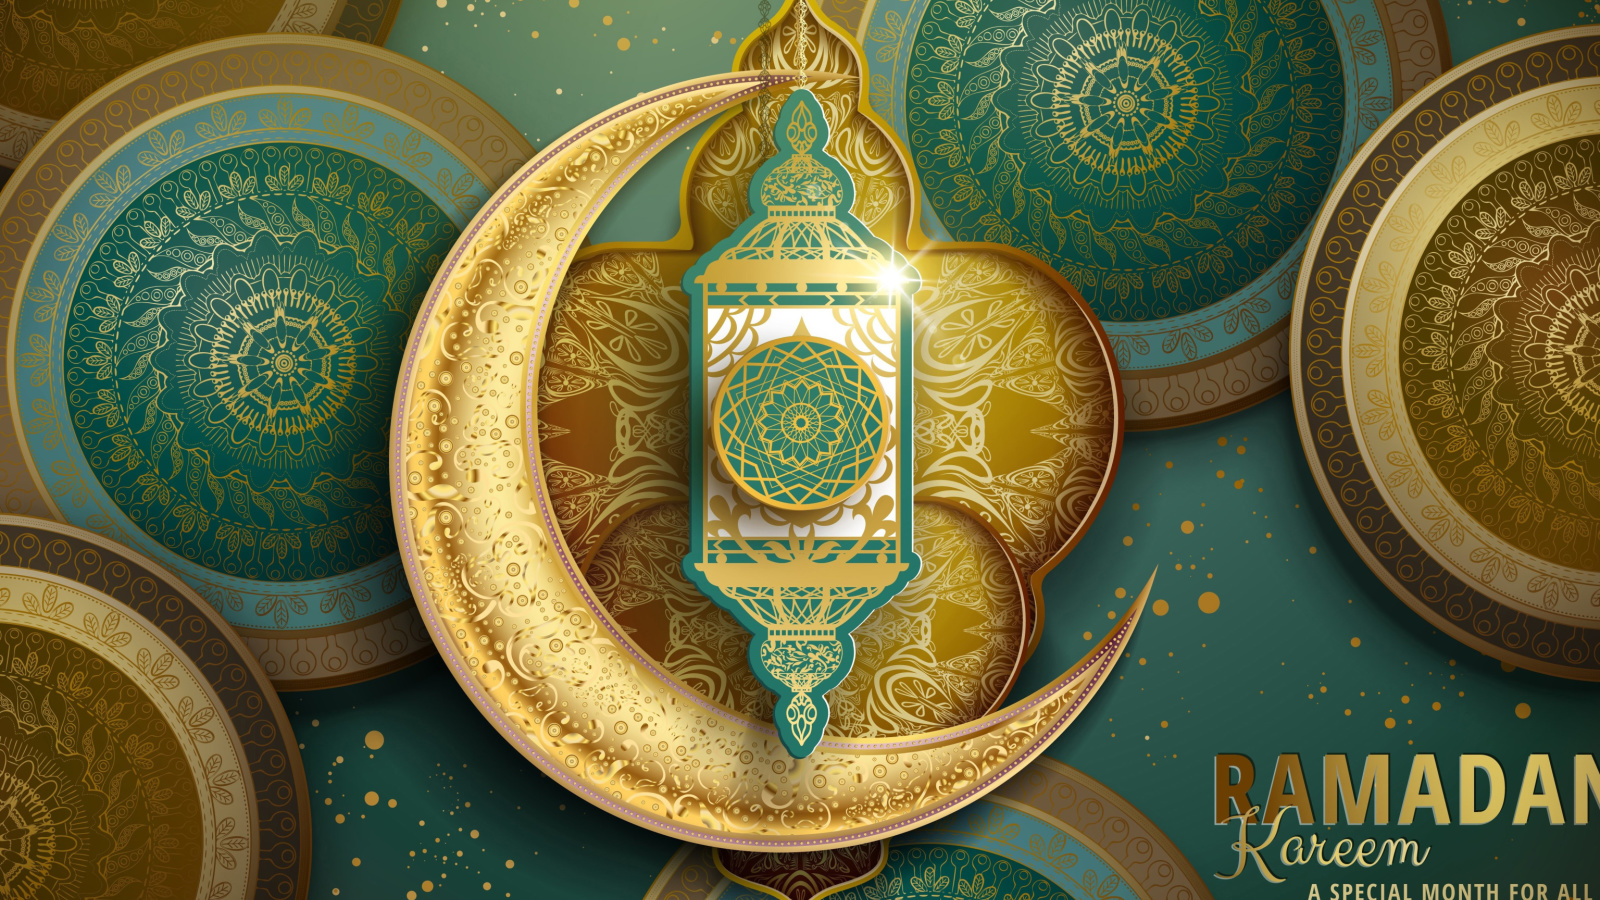 Ramadan Kareem wallpaper 1600x900